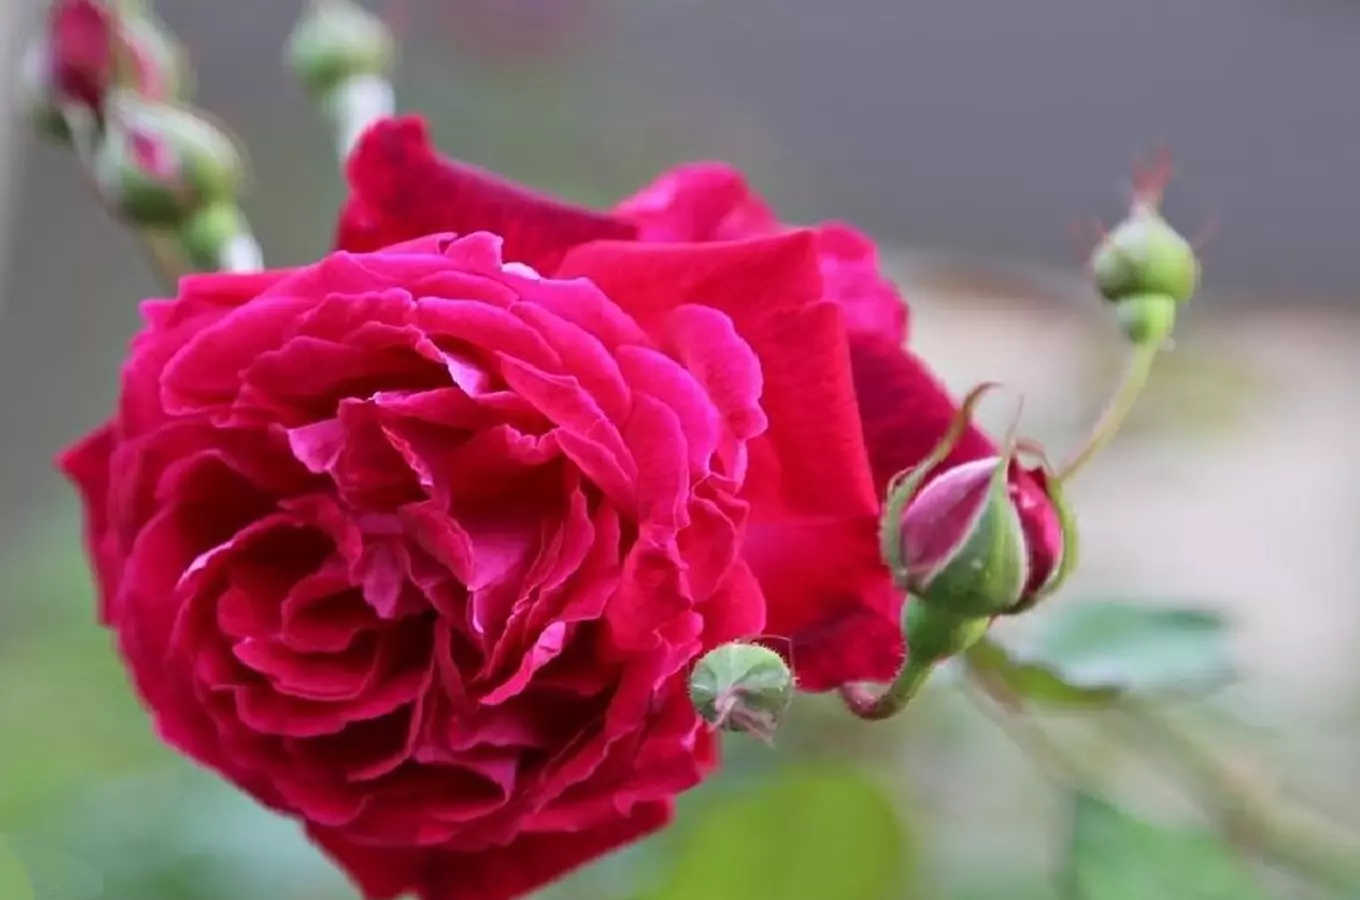 Růže Gruss an Teplitz – nejslavnější odrůda růží v Teplicích